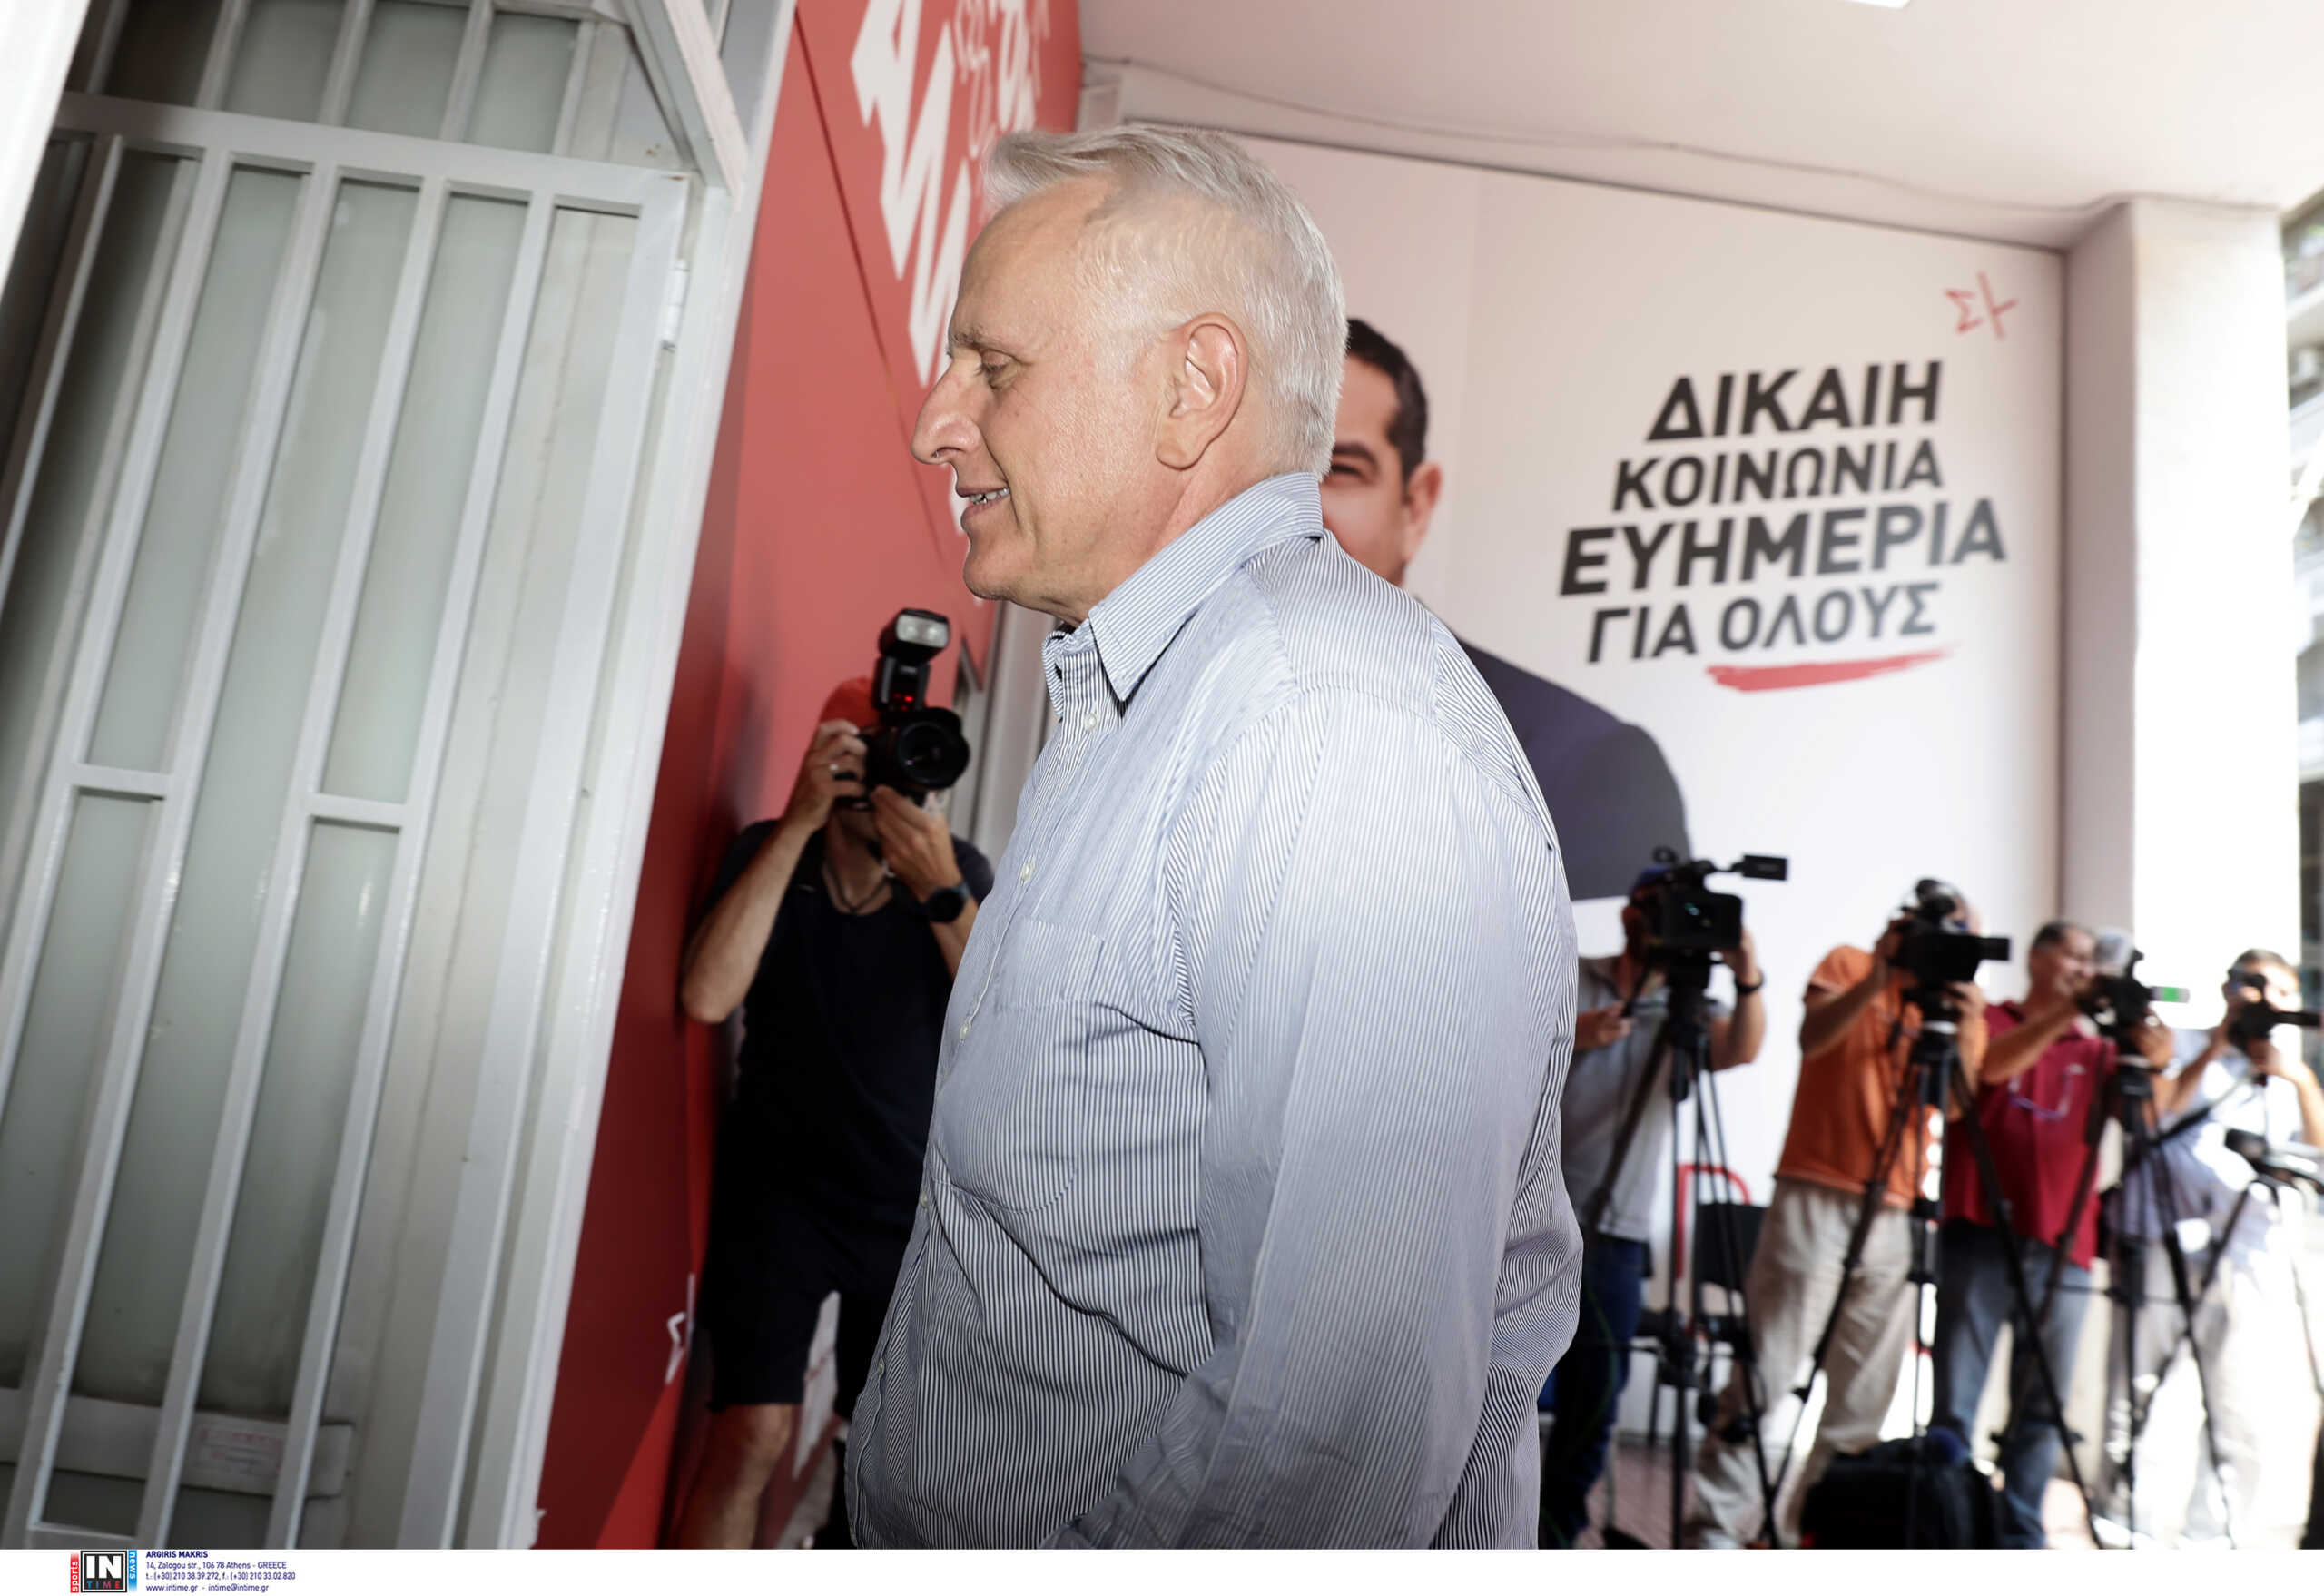 Εκλογές ΣΥΡΙΖΑ: «Άγνωστος “Χ” ο Κασσελάκης, είμαι ανήσυχος για την ενότητα», είπε ο Γιάννης Ραγκούσης – Καρφιά κατά Πολάκη